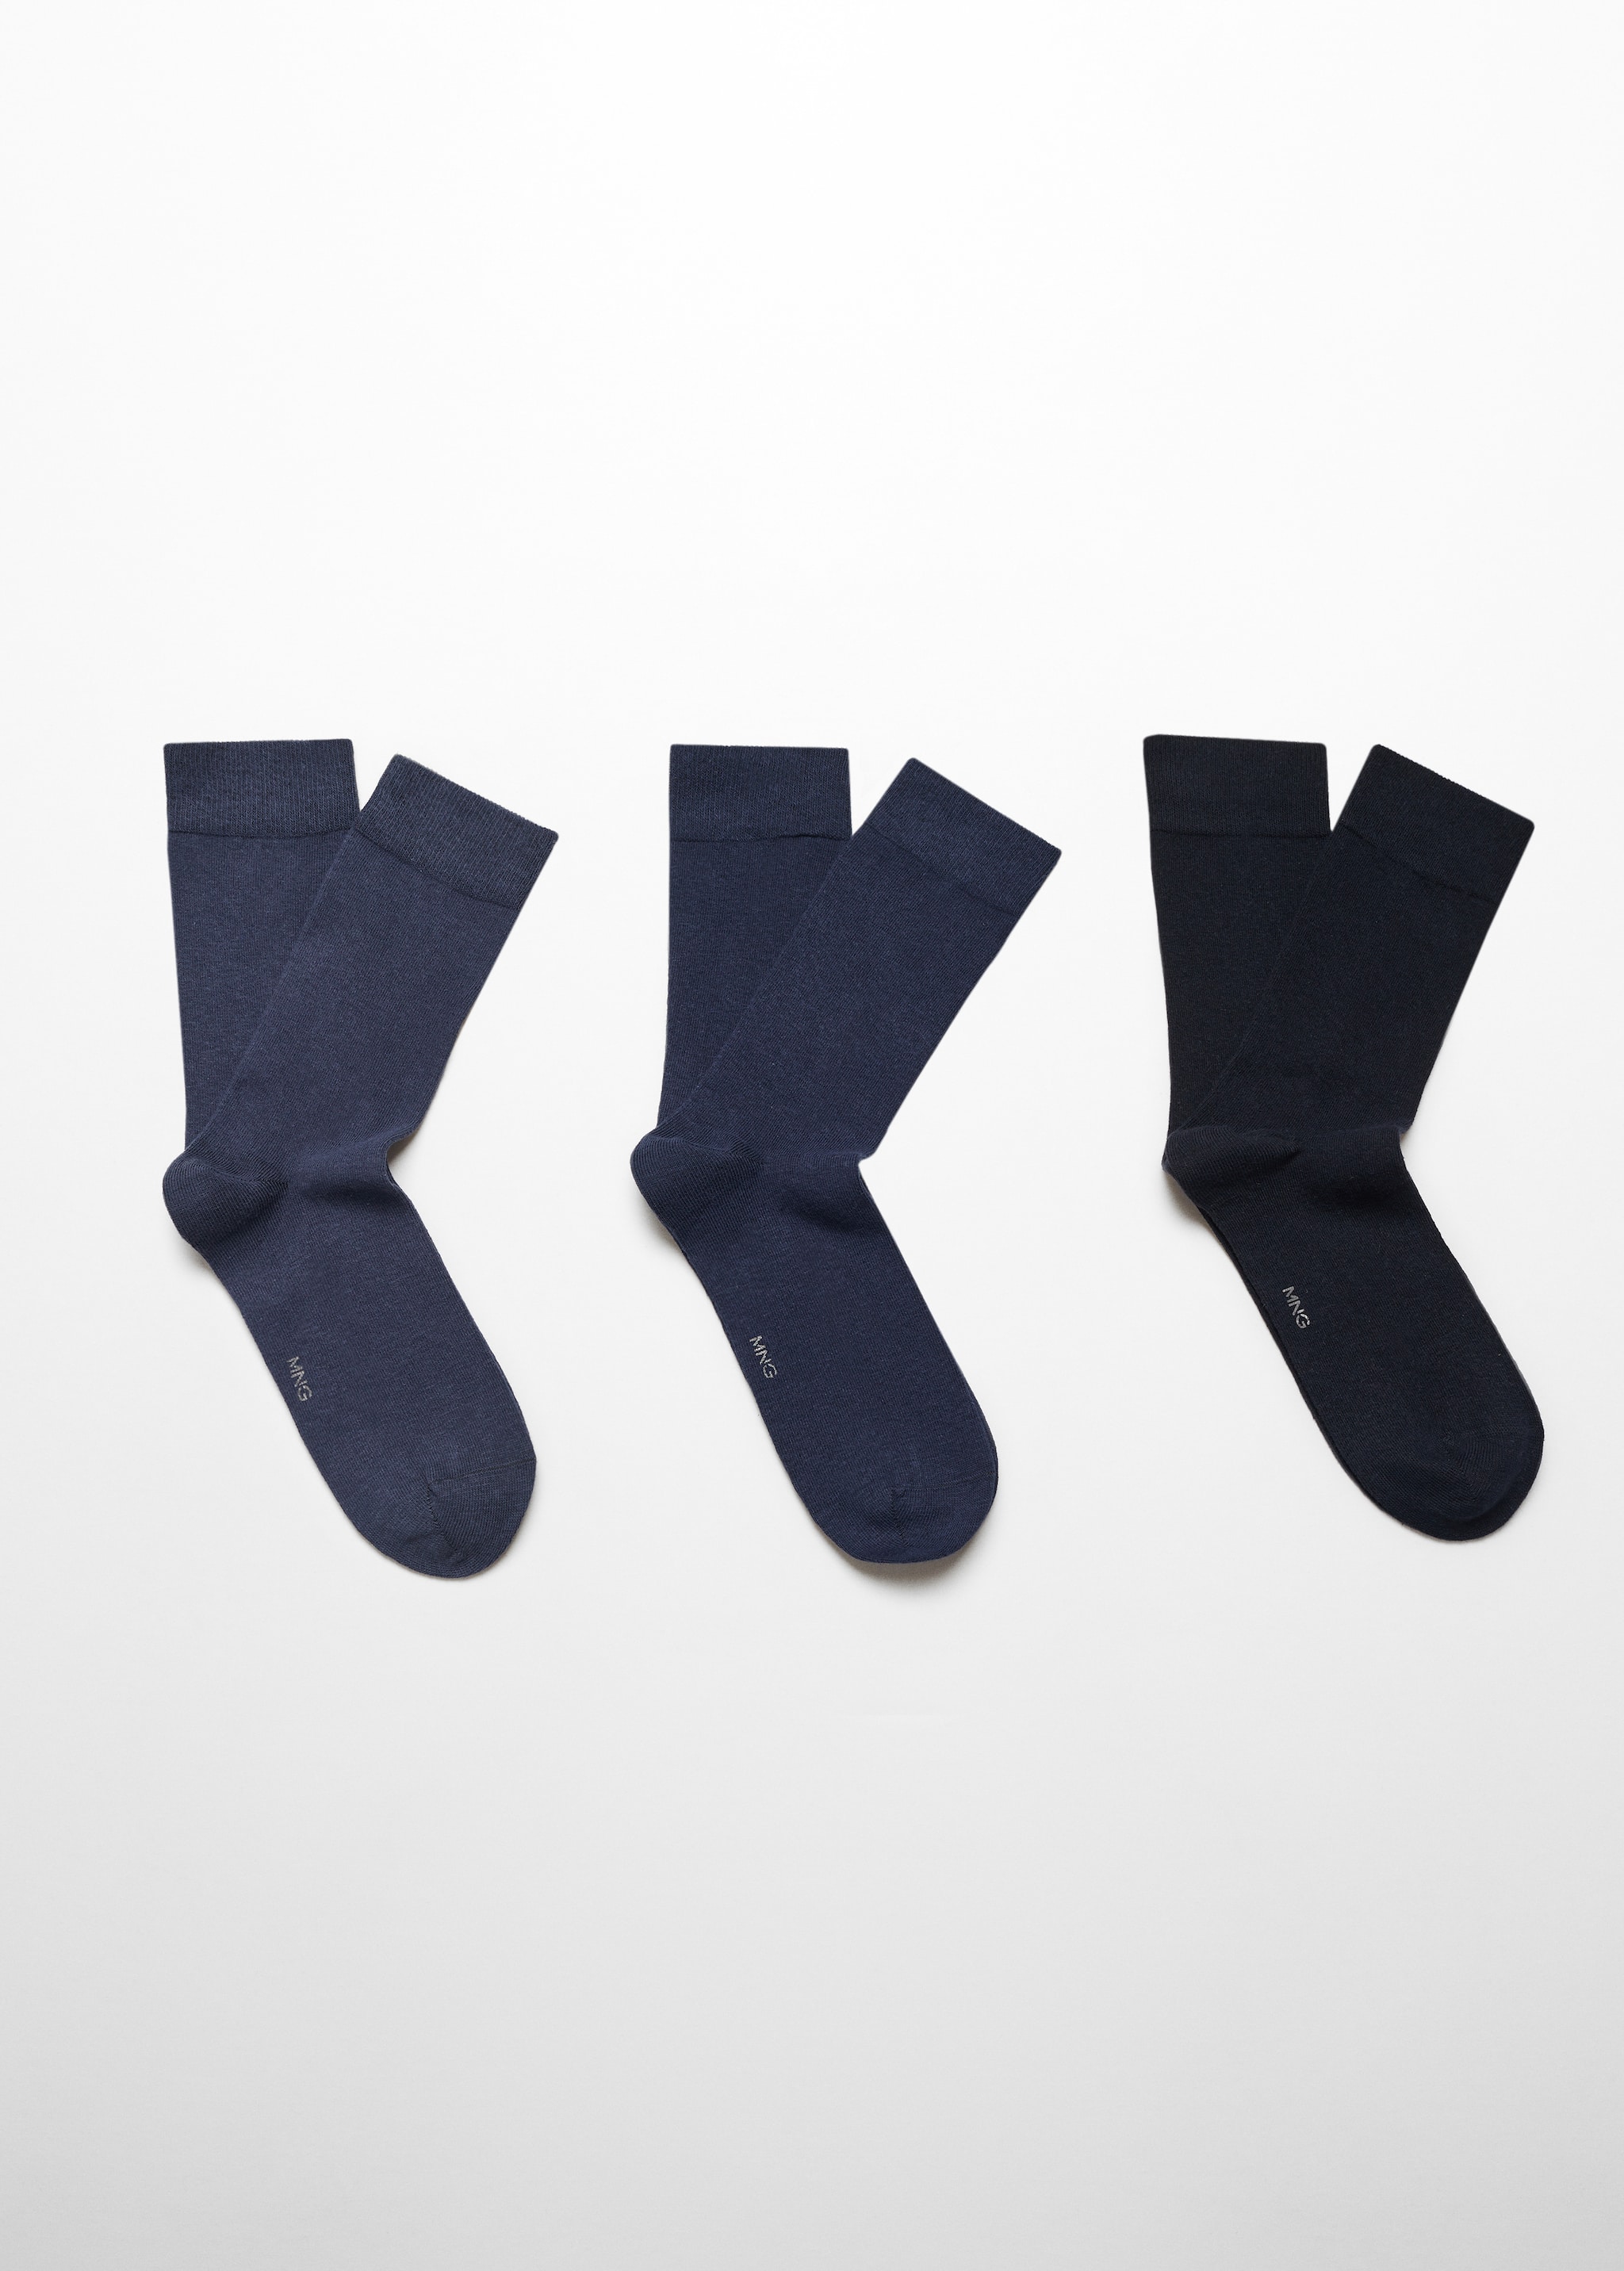 Lot 3 paires de chaussettes coton - Article sans modèle